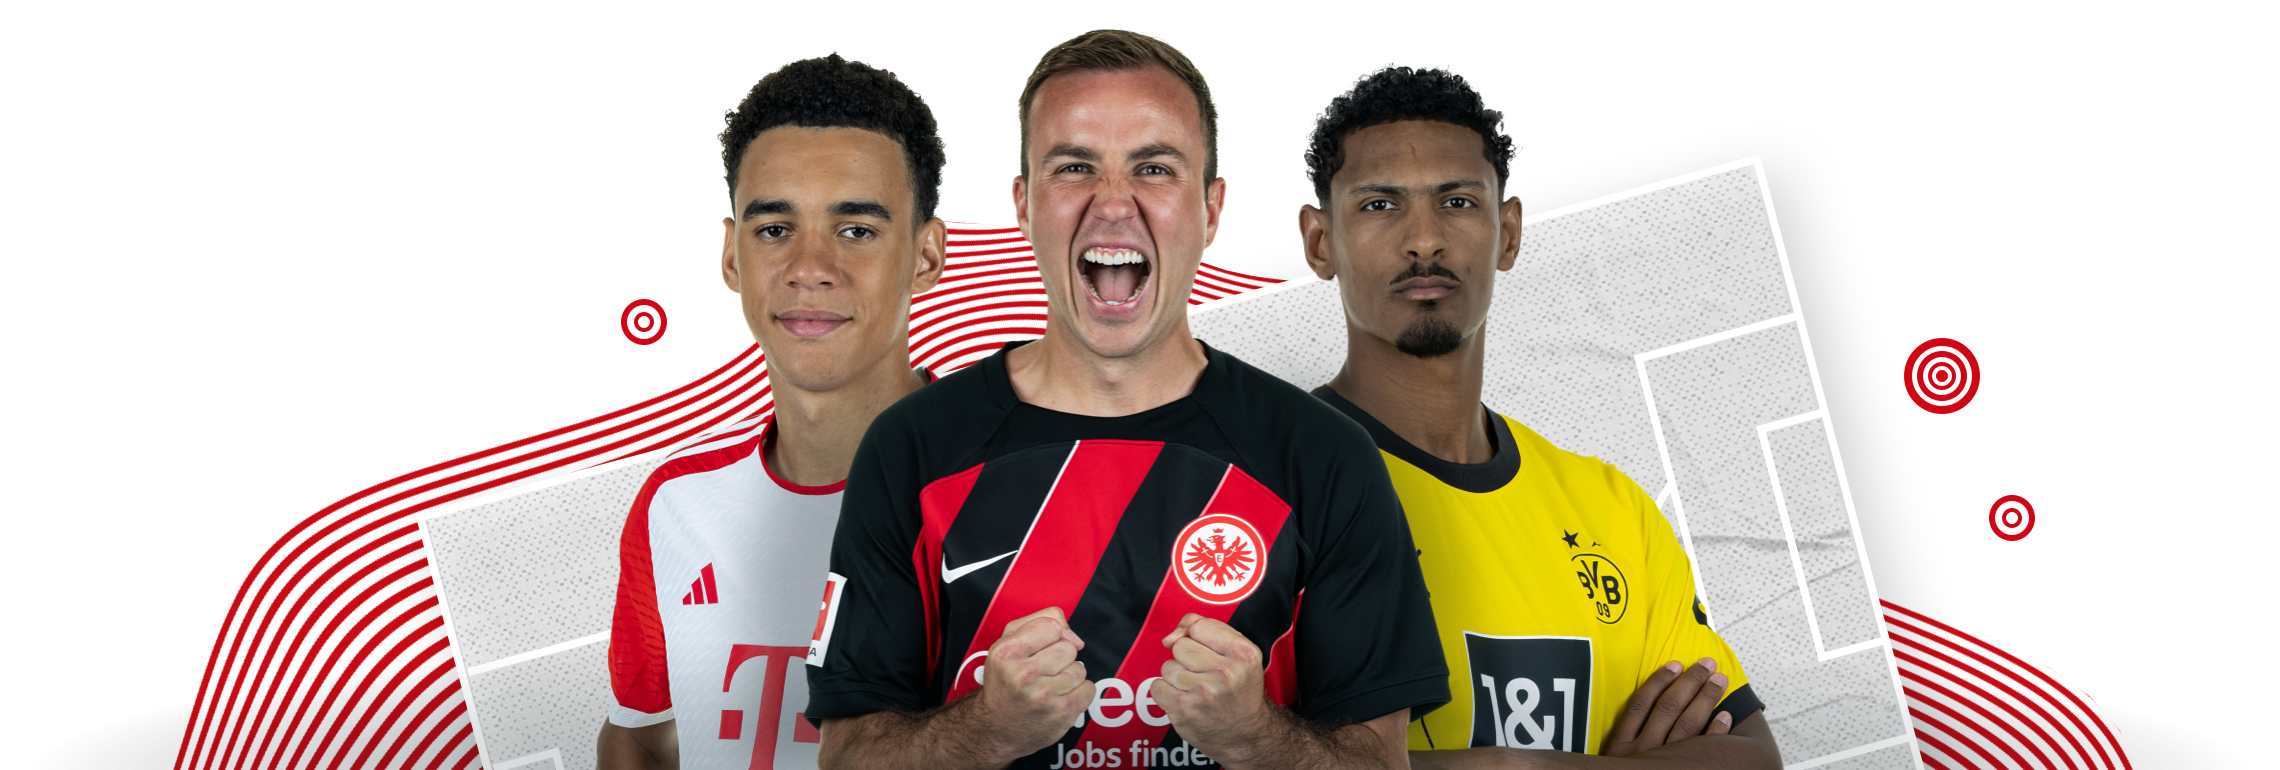 Bundesliga  official website